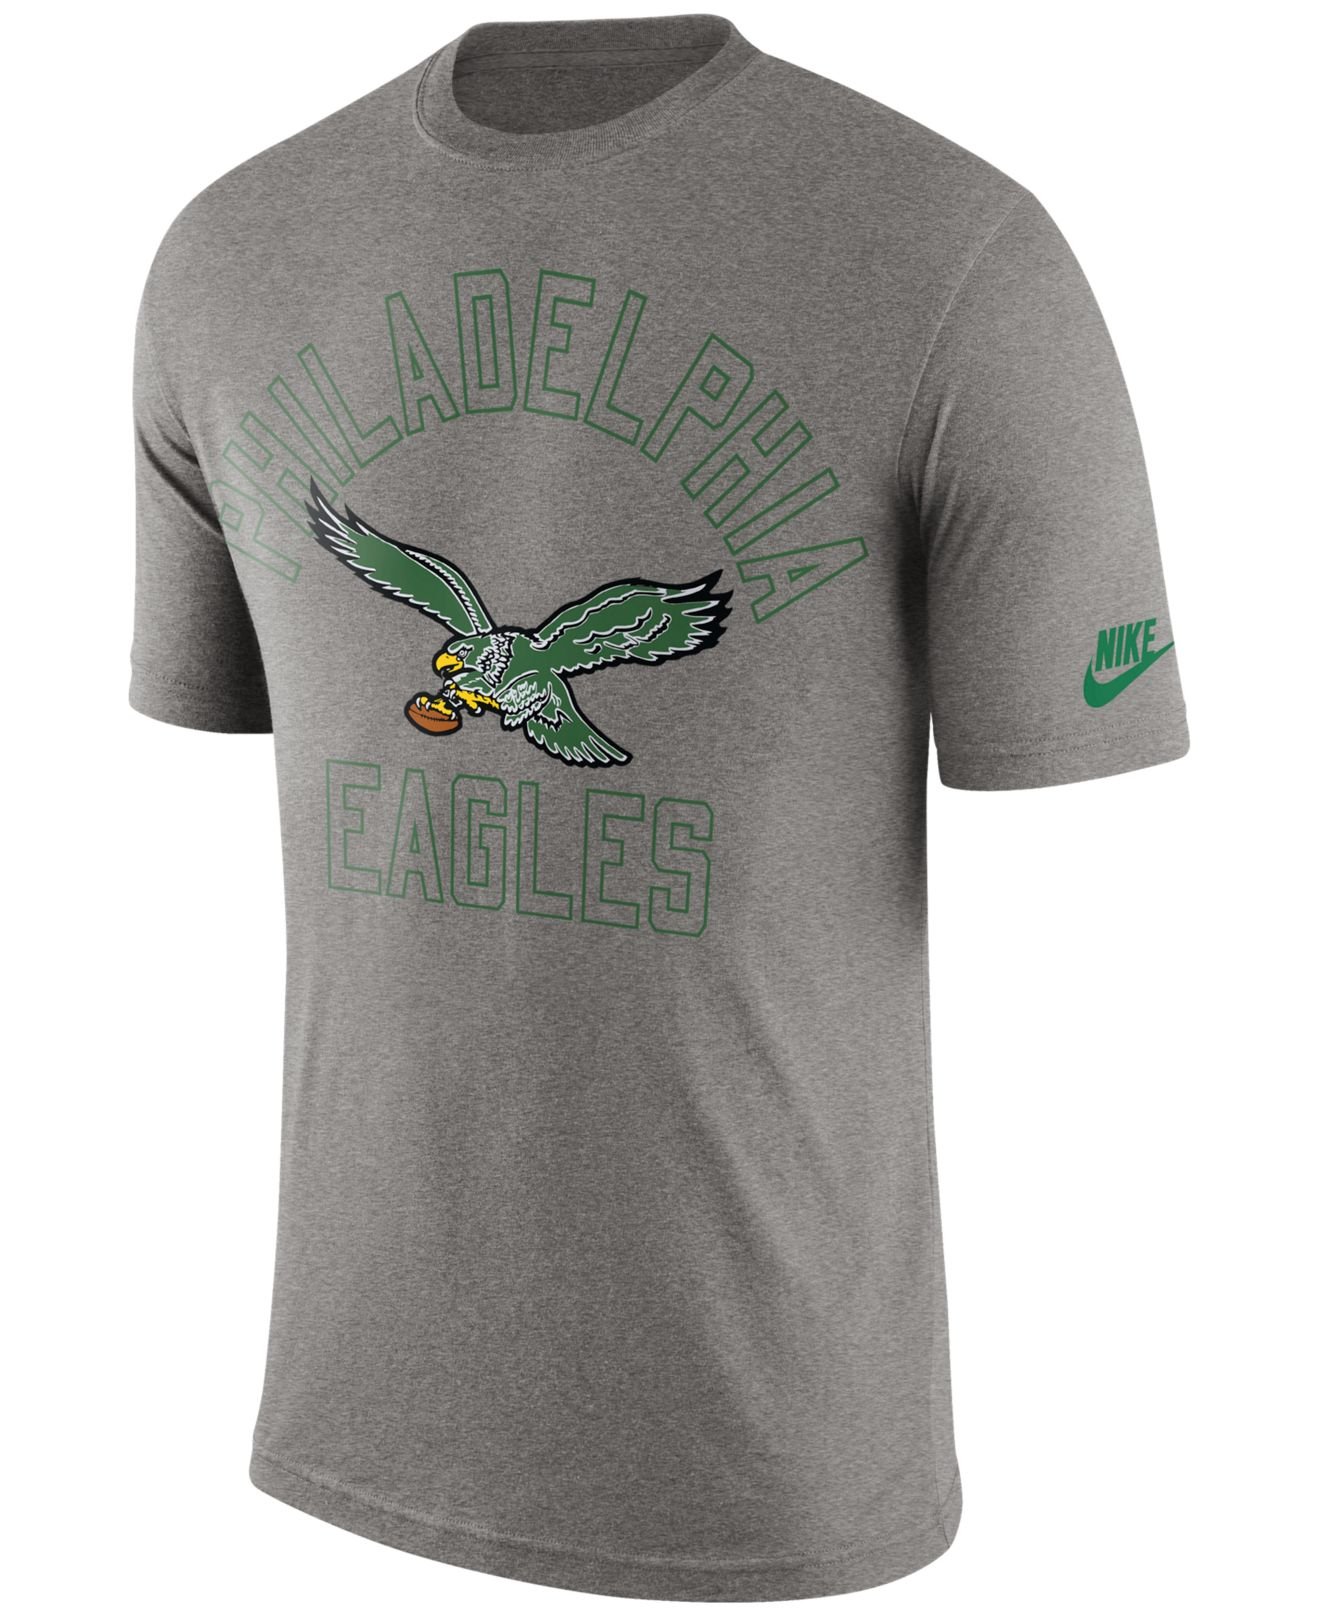 eagles vintage t shirt